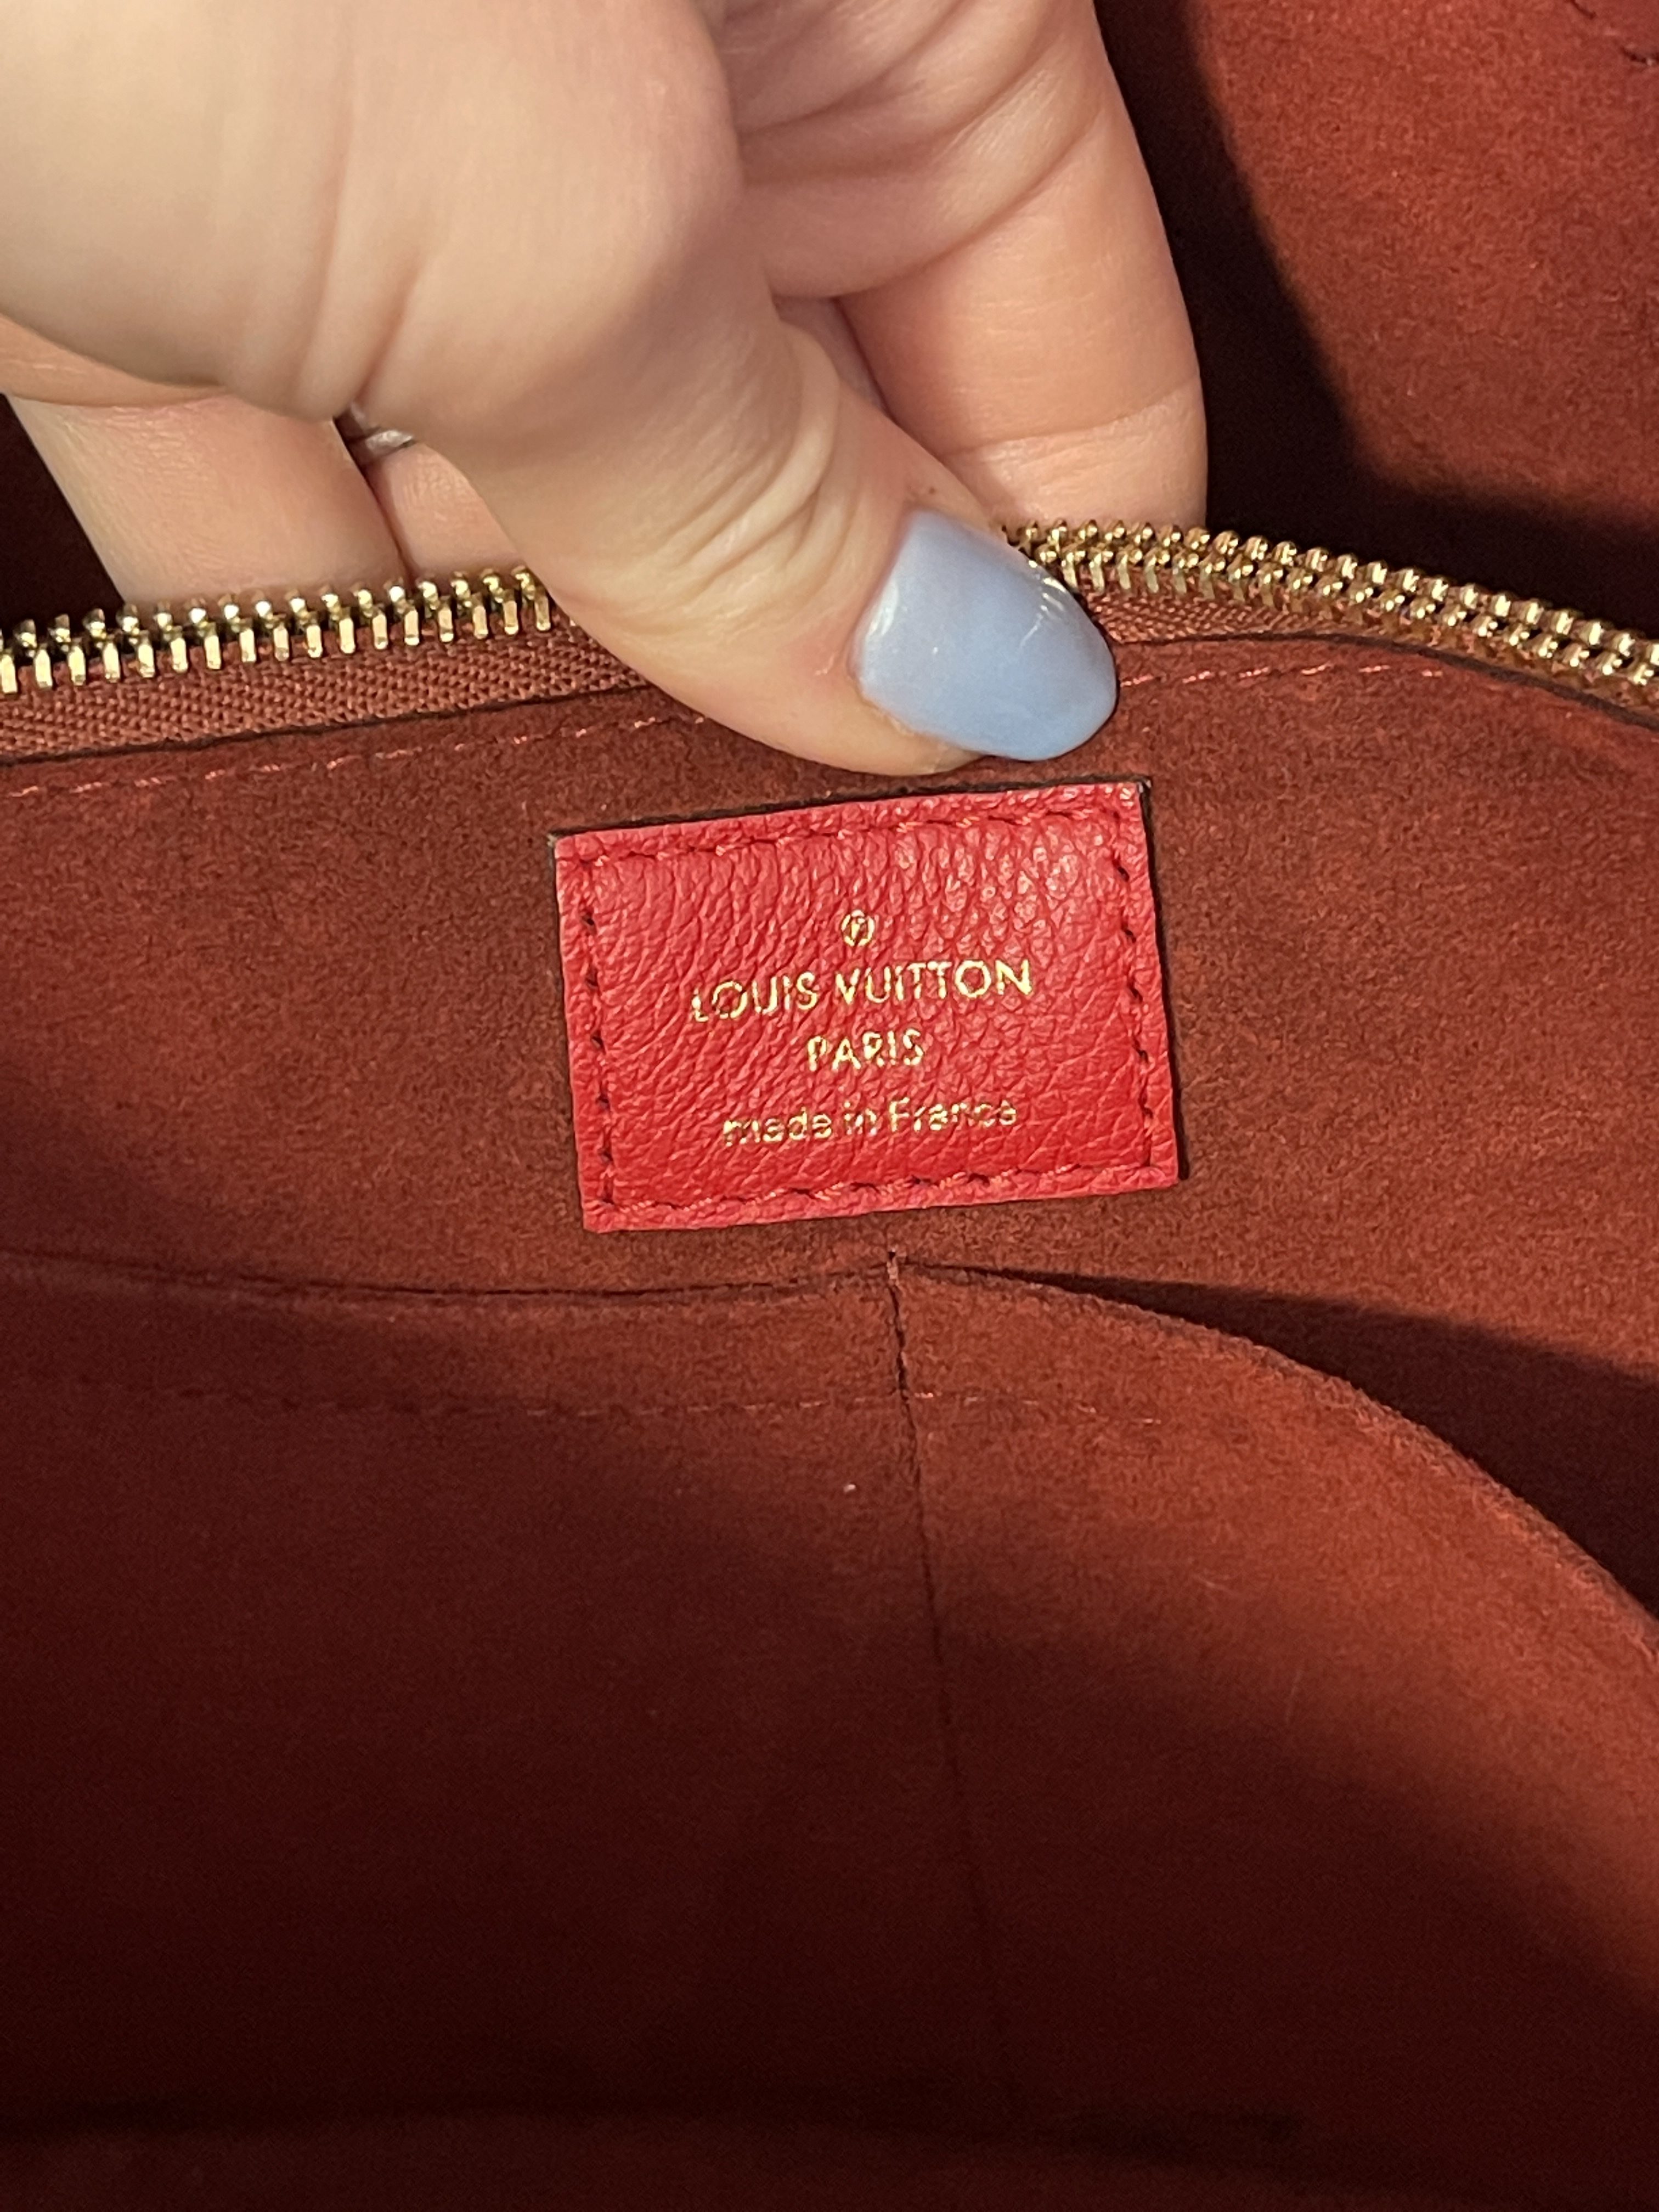 Kimono PM Monogram – Keeks Designer Handbags